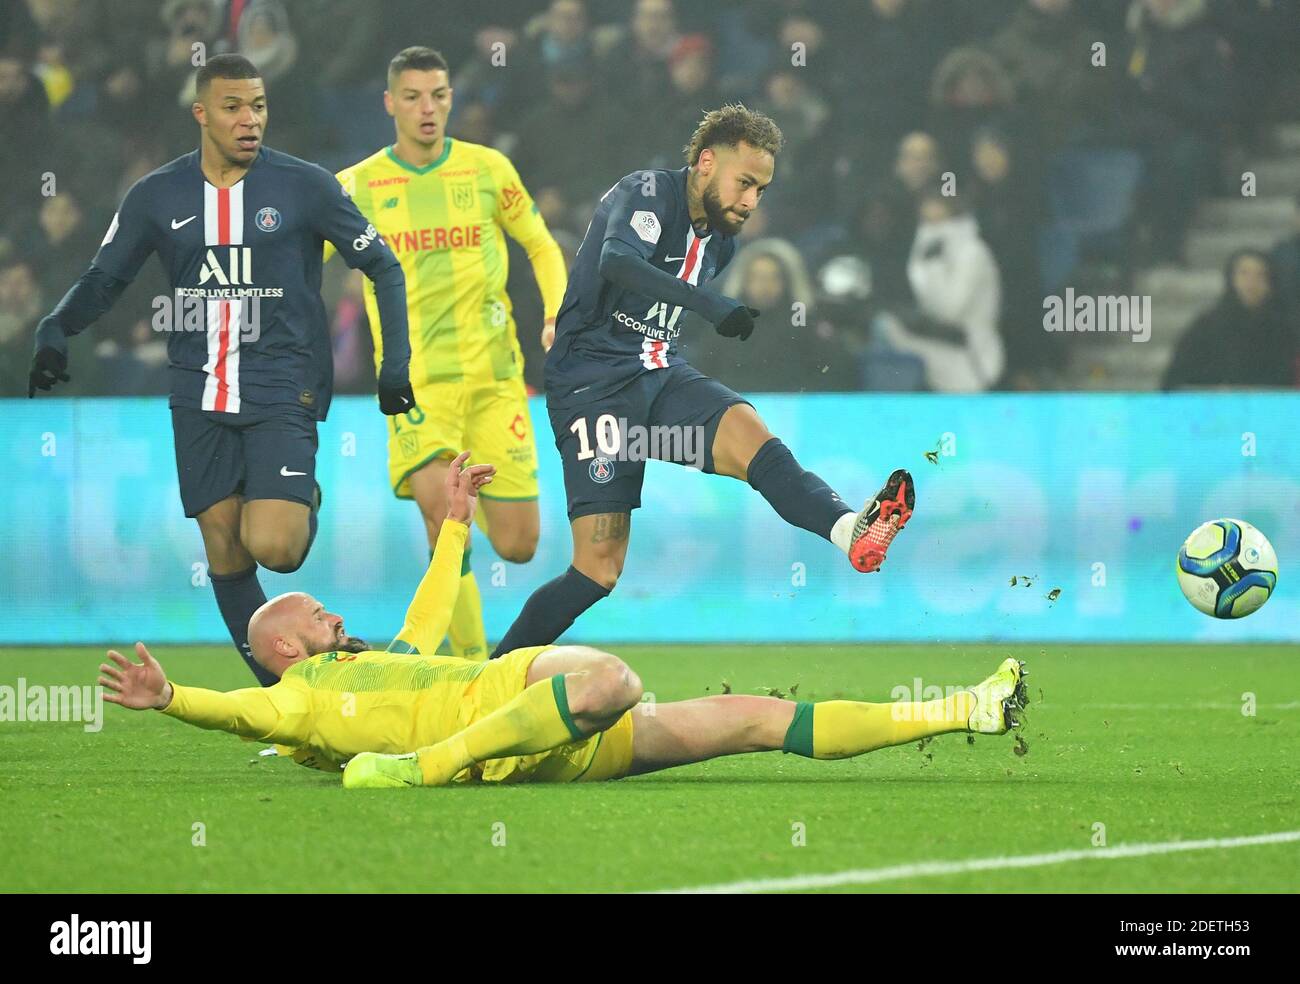 PSG's Neymar during the Ligue 1 Paris Saint-Germain (PSG) v FC Nantes (FCN) football  match at the Parc des Princes stadium in Paris, France on December 4, 2019.  PSG won 2-0. Photo